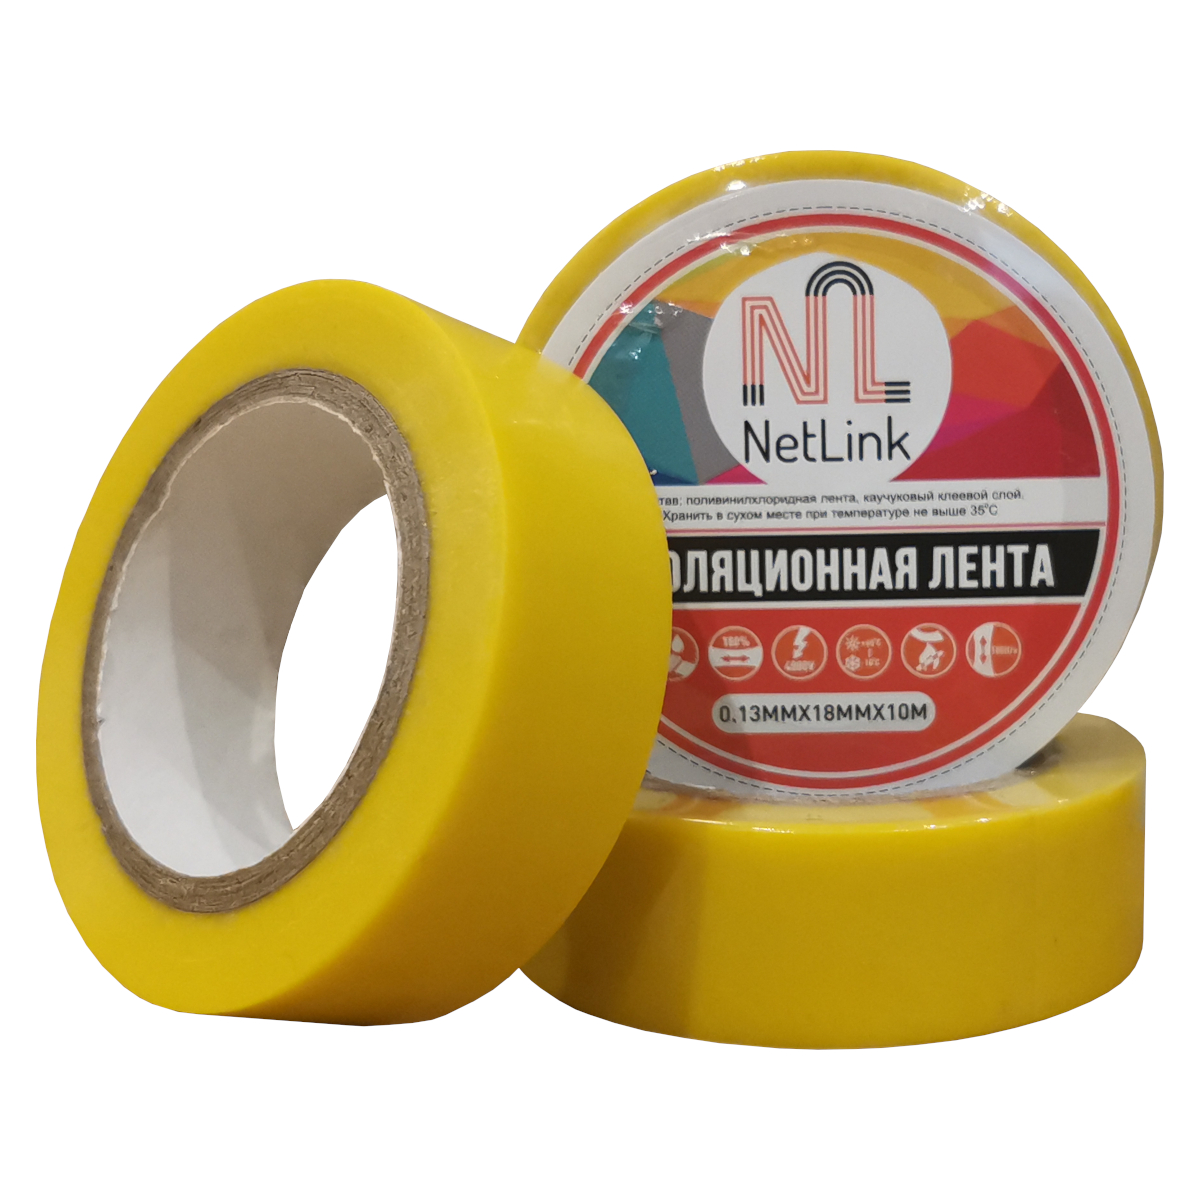 Изолента желтая NETLINK 0,13мм х 18мм х 10м (упак.5 штук)